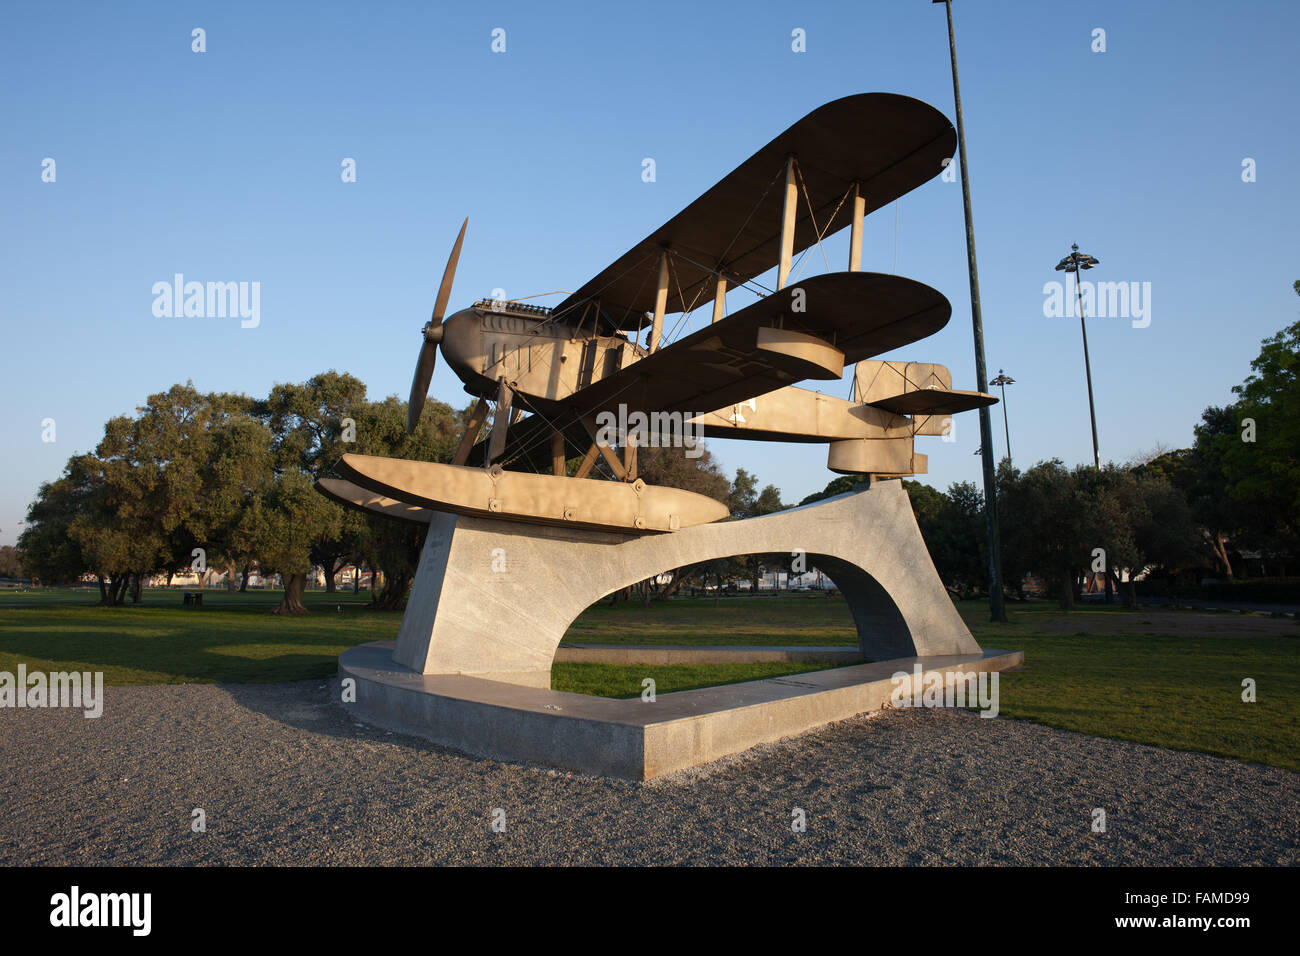 Portugal, Lisbonne, Belém, monument de Santa Cruz d'hydravions Fairey réplique utilisée par Coutinho et Cabral pour leurs transatlantic flig Banque D'Images